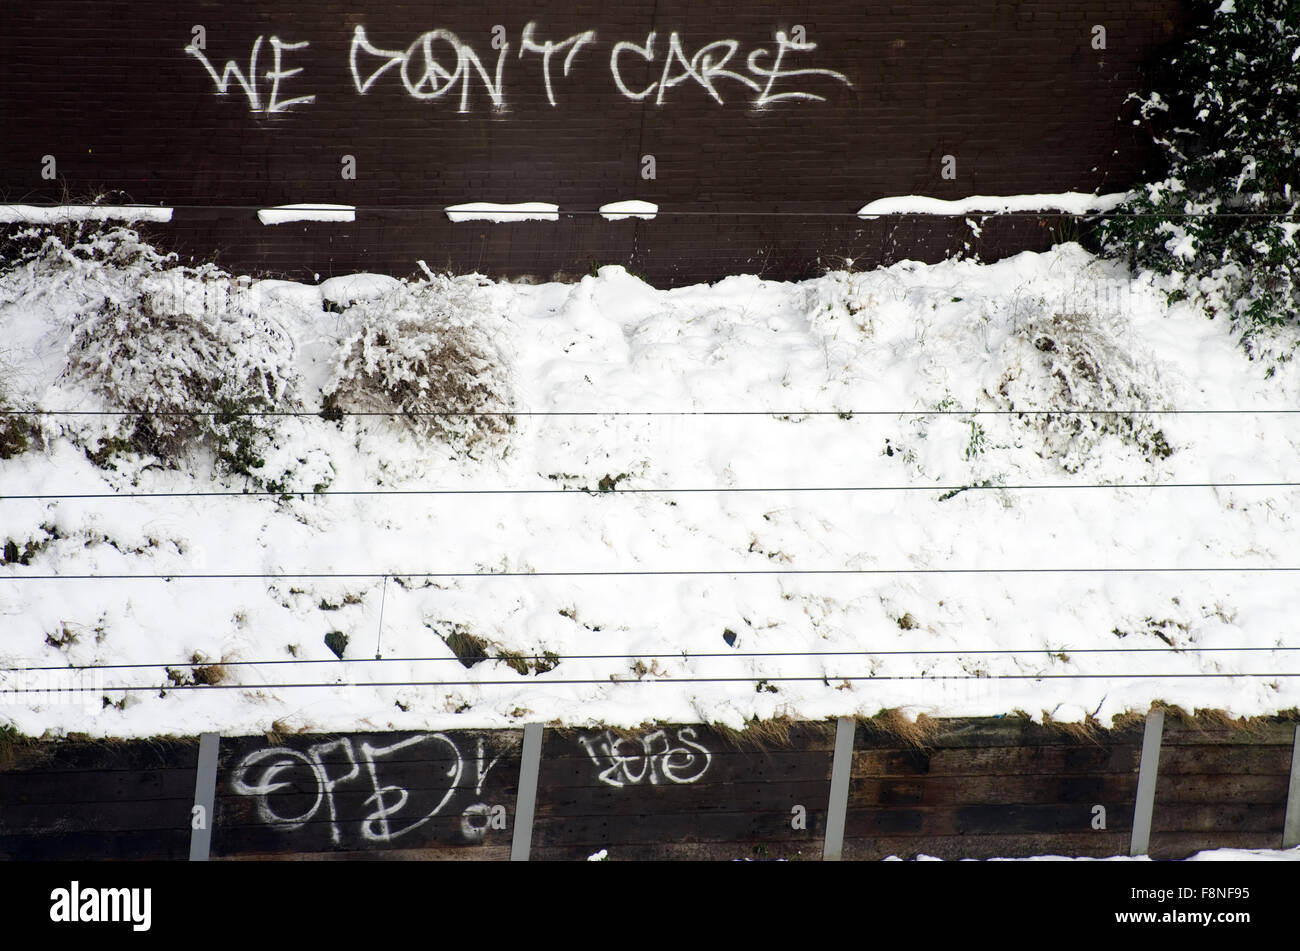 Wir kümmern uns nicht, Graffiti auf einer braunen Wand neben einigen Gleisanlagen, mit Schnee bedeckt Stockfoto